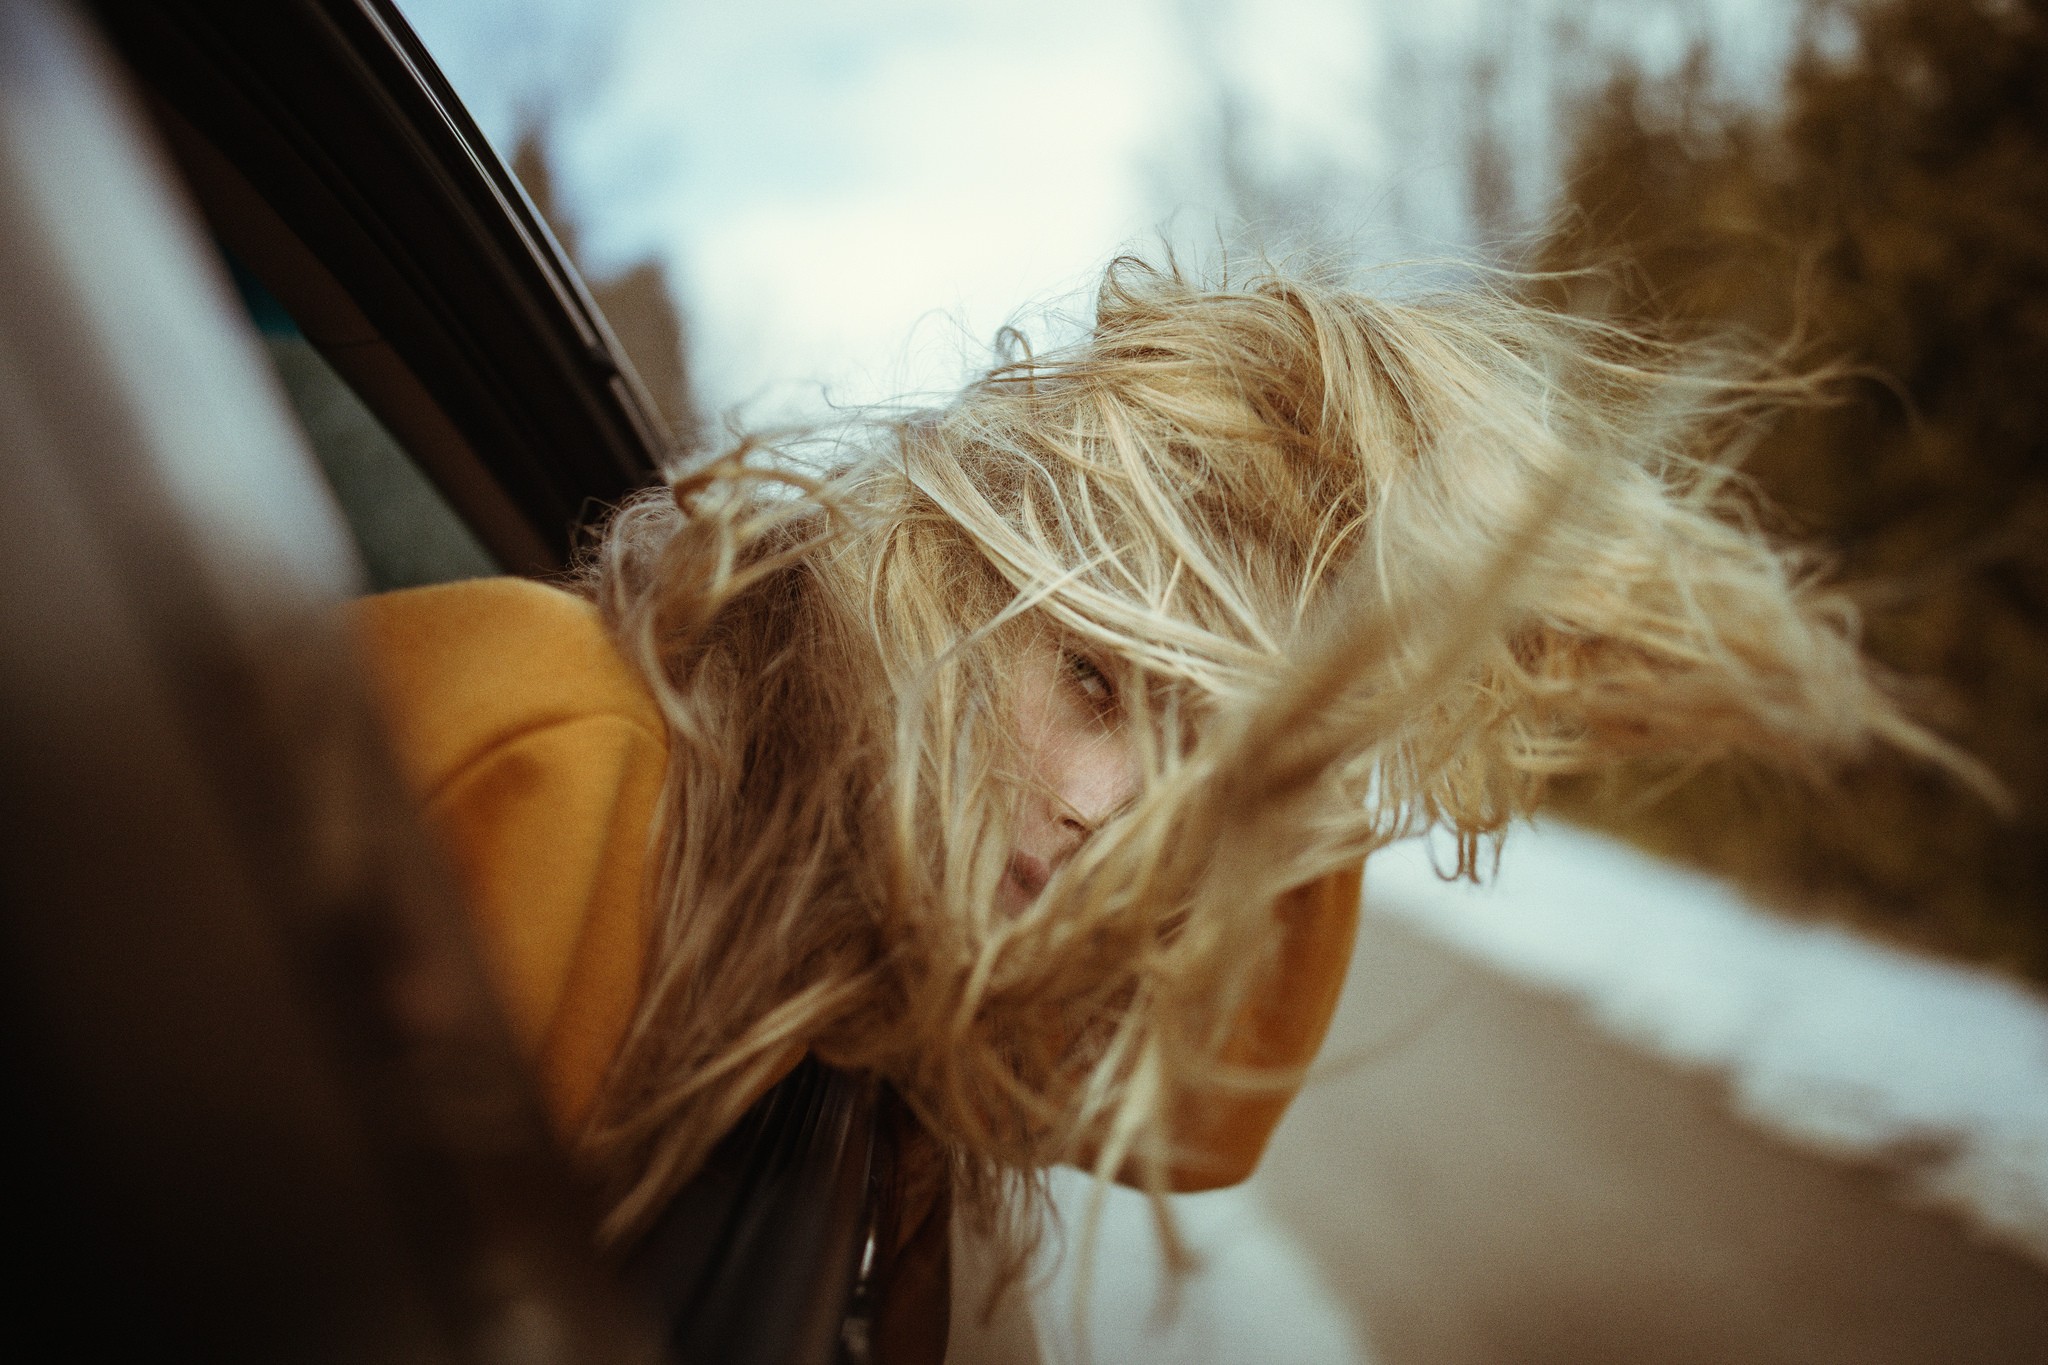 Women Model Blonde Windy Hair In Face Window Looking Out Window Looking At Viewer Marta Piekarz Jess 2048x1365